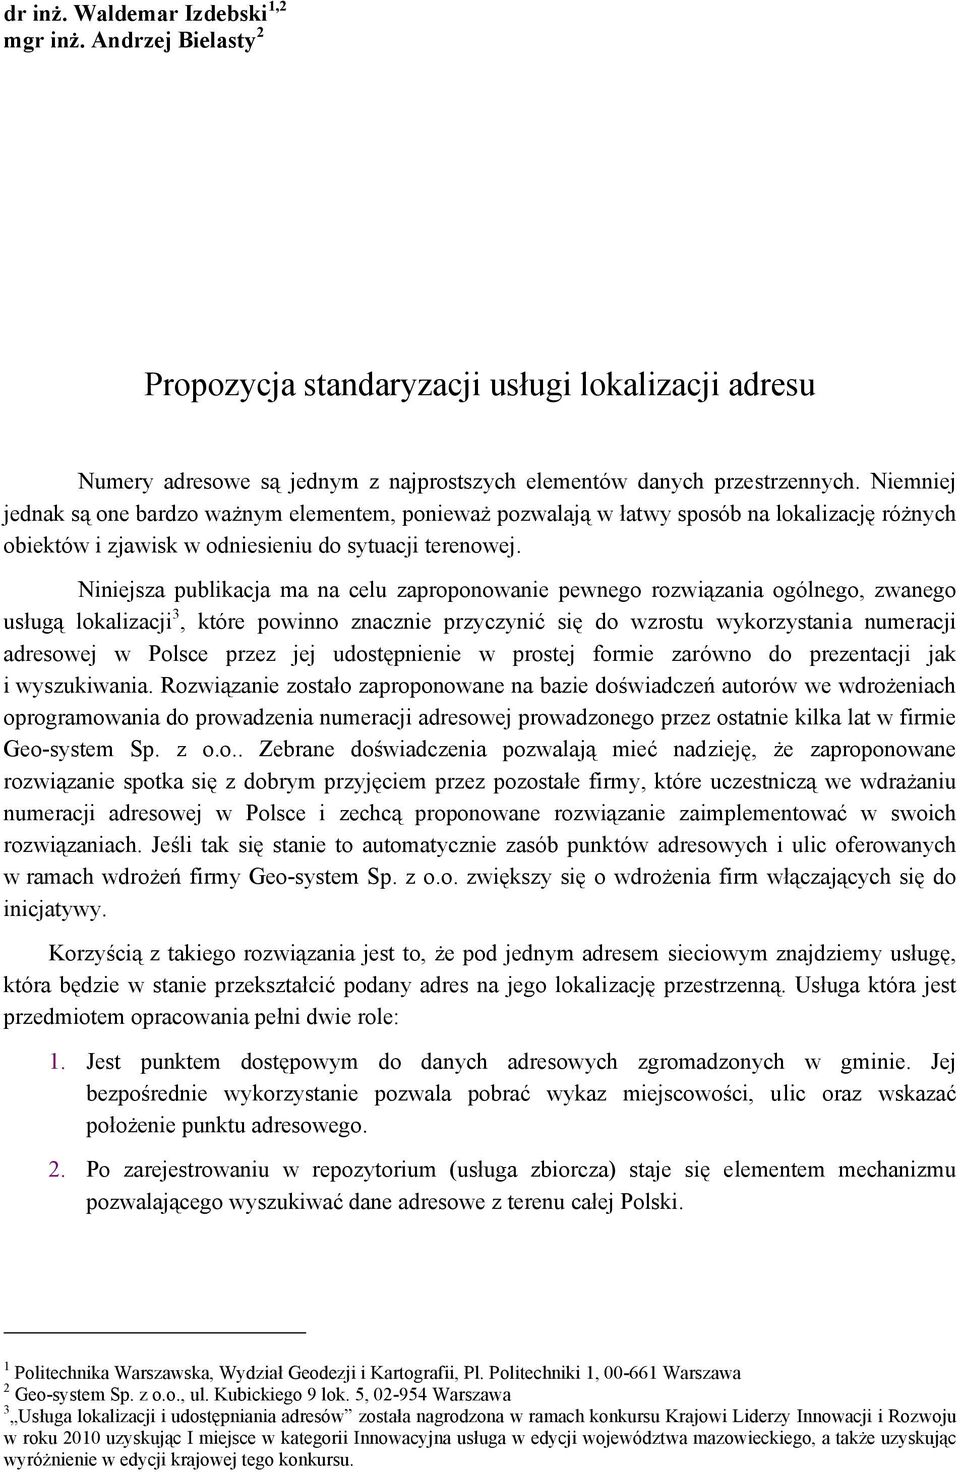 Niniejsza publikacja ma na celu zaproponowanie pewnego rozwiązania ogólnego, zwanego usługą lokalizacji 3, które powinno znacznie przyczynić się do wzrostu wykorzystania numeracji adresowej w Polsce